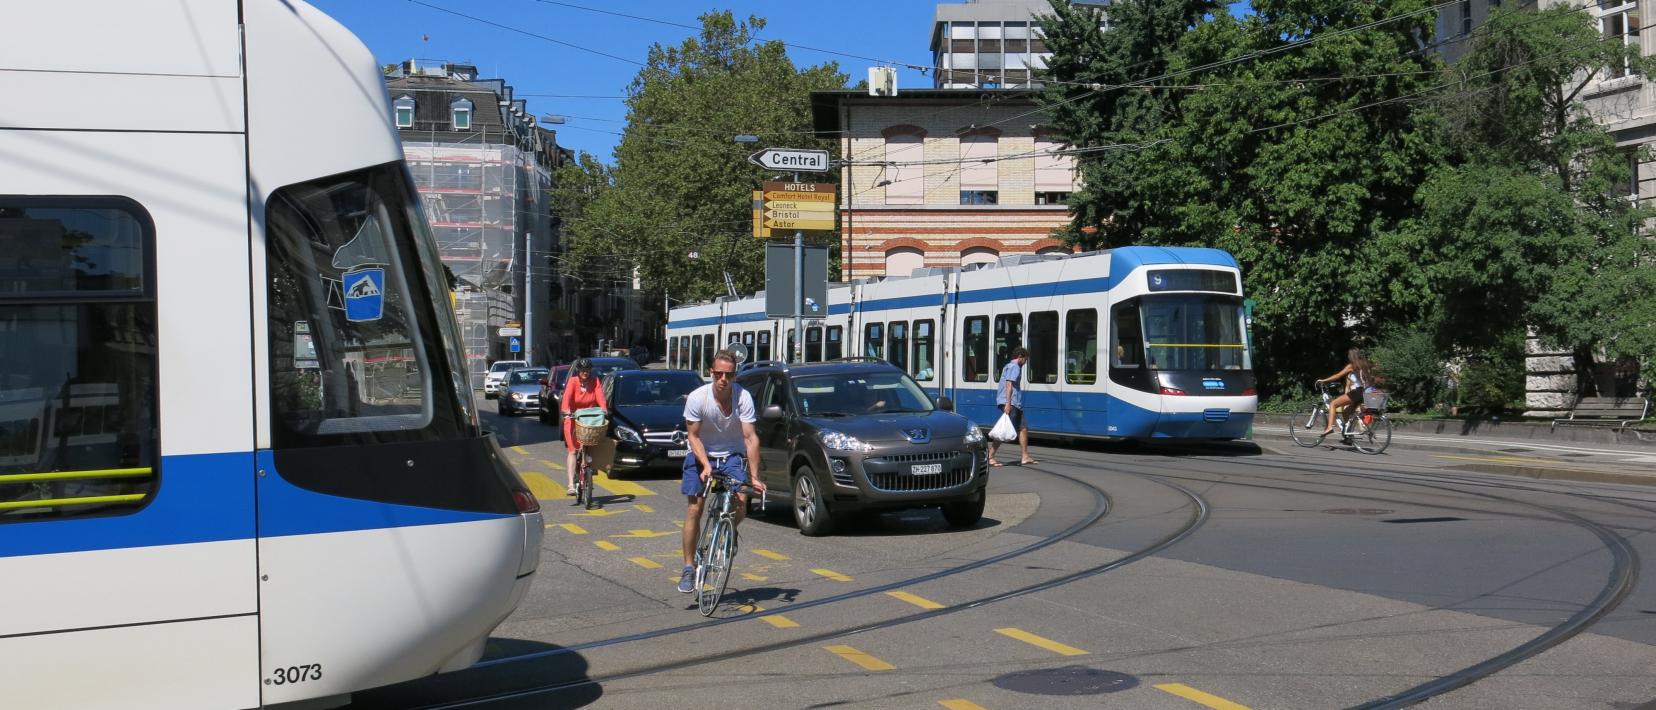 Das Bild zeigt die Polybahn und ein Cobra-Tram der VBZ am Central.